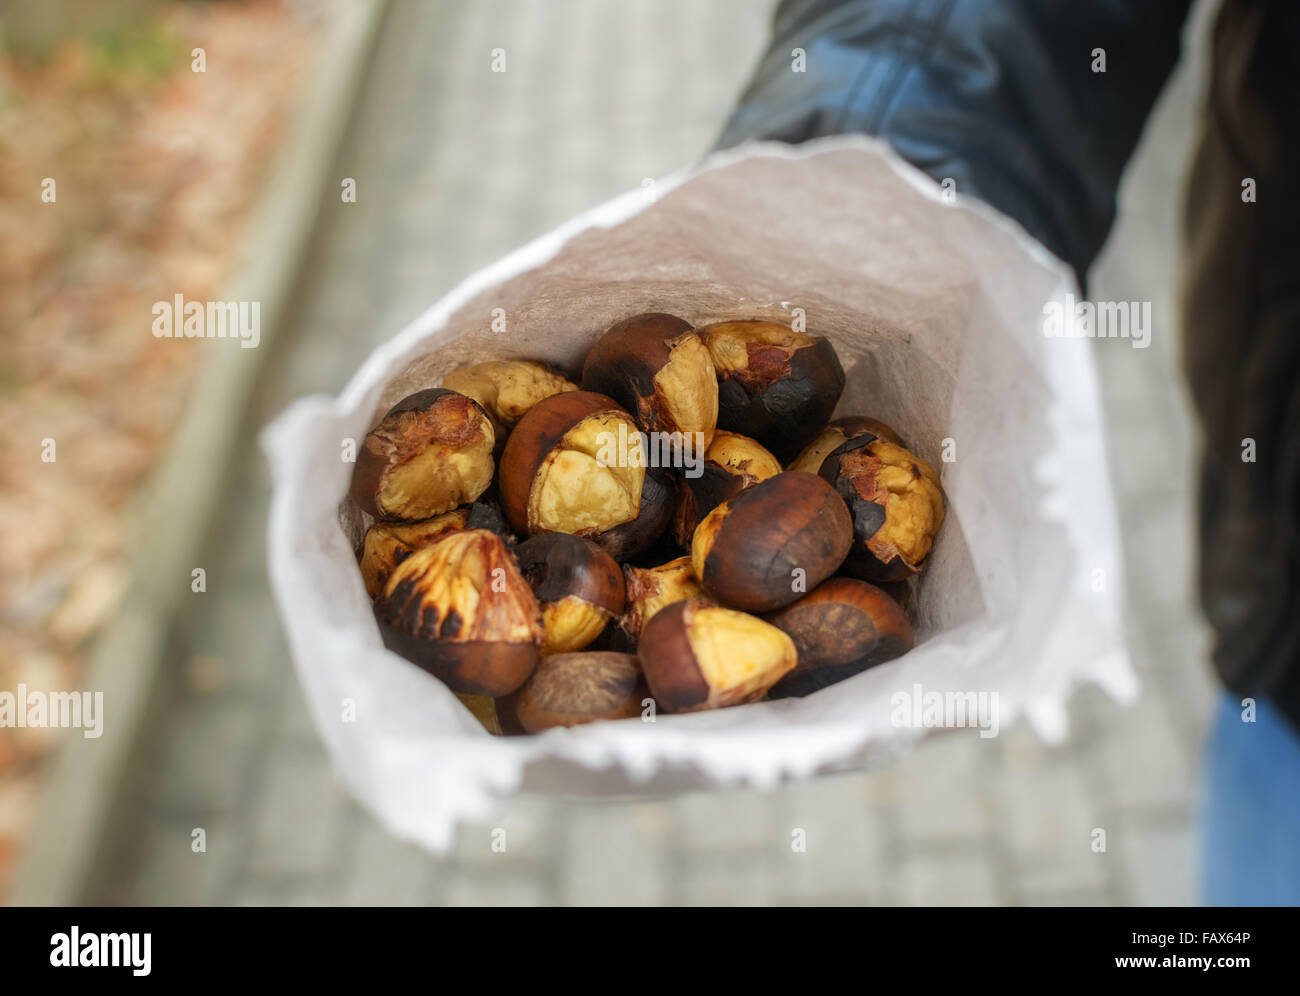 Hombre sujetando fresh castañas asadas en bolsa de papel. Foto de stock